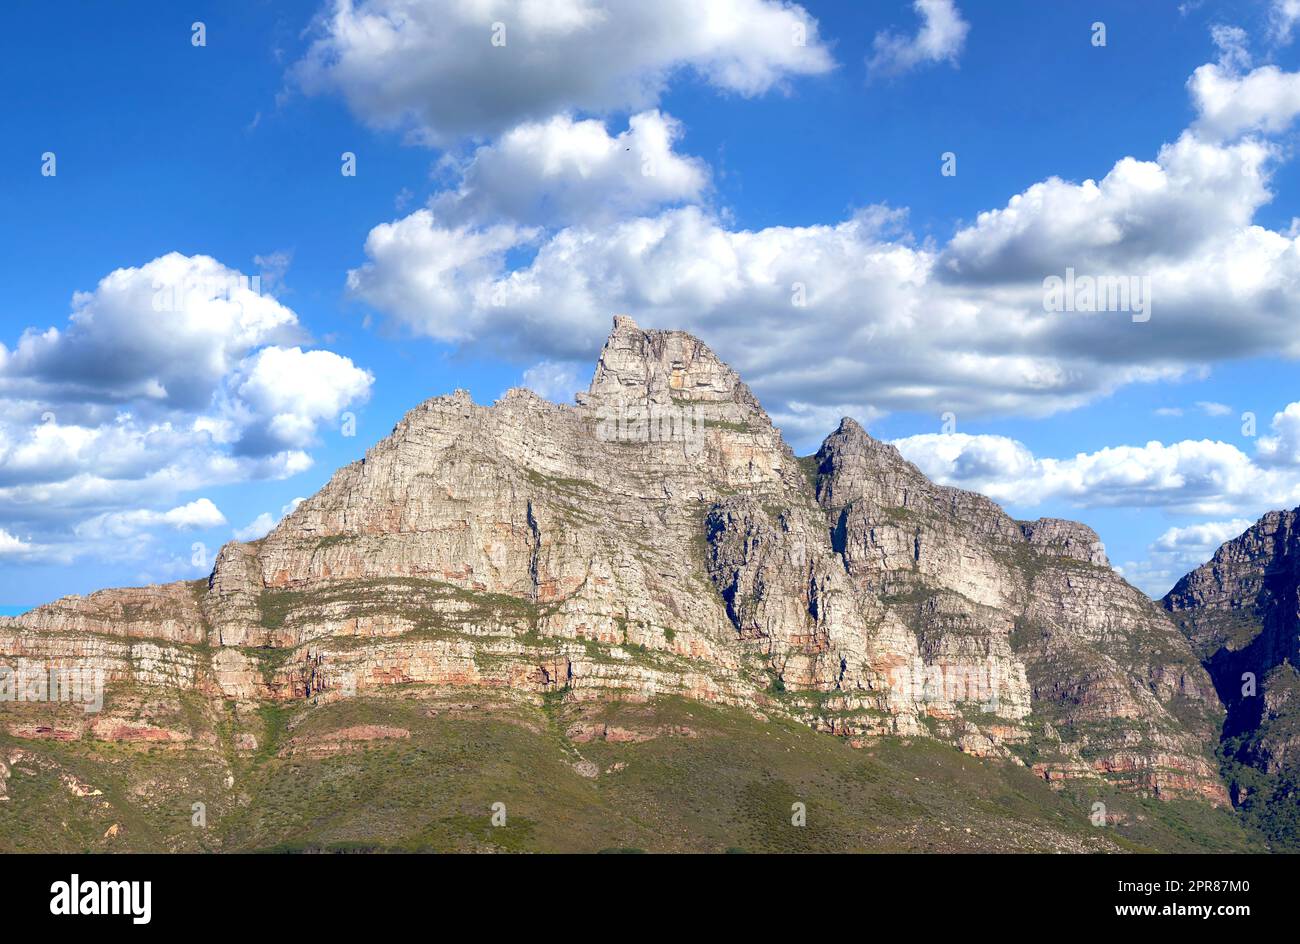 Berglandschaft am blauen, wolkigen Himmel. Wunderschöne Aussicht auf Bergspitzen mit Hügeln bedeckt mit grünem Gras, Sträuchern und Büschen an einem beliebten Wahrzeichen oder Wanderort in Kapstadt, Südafrika Stockfoto